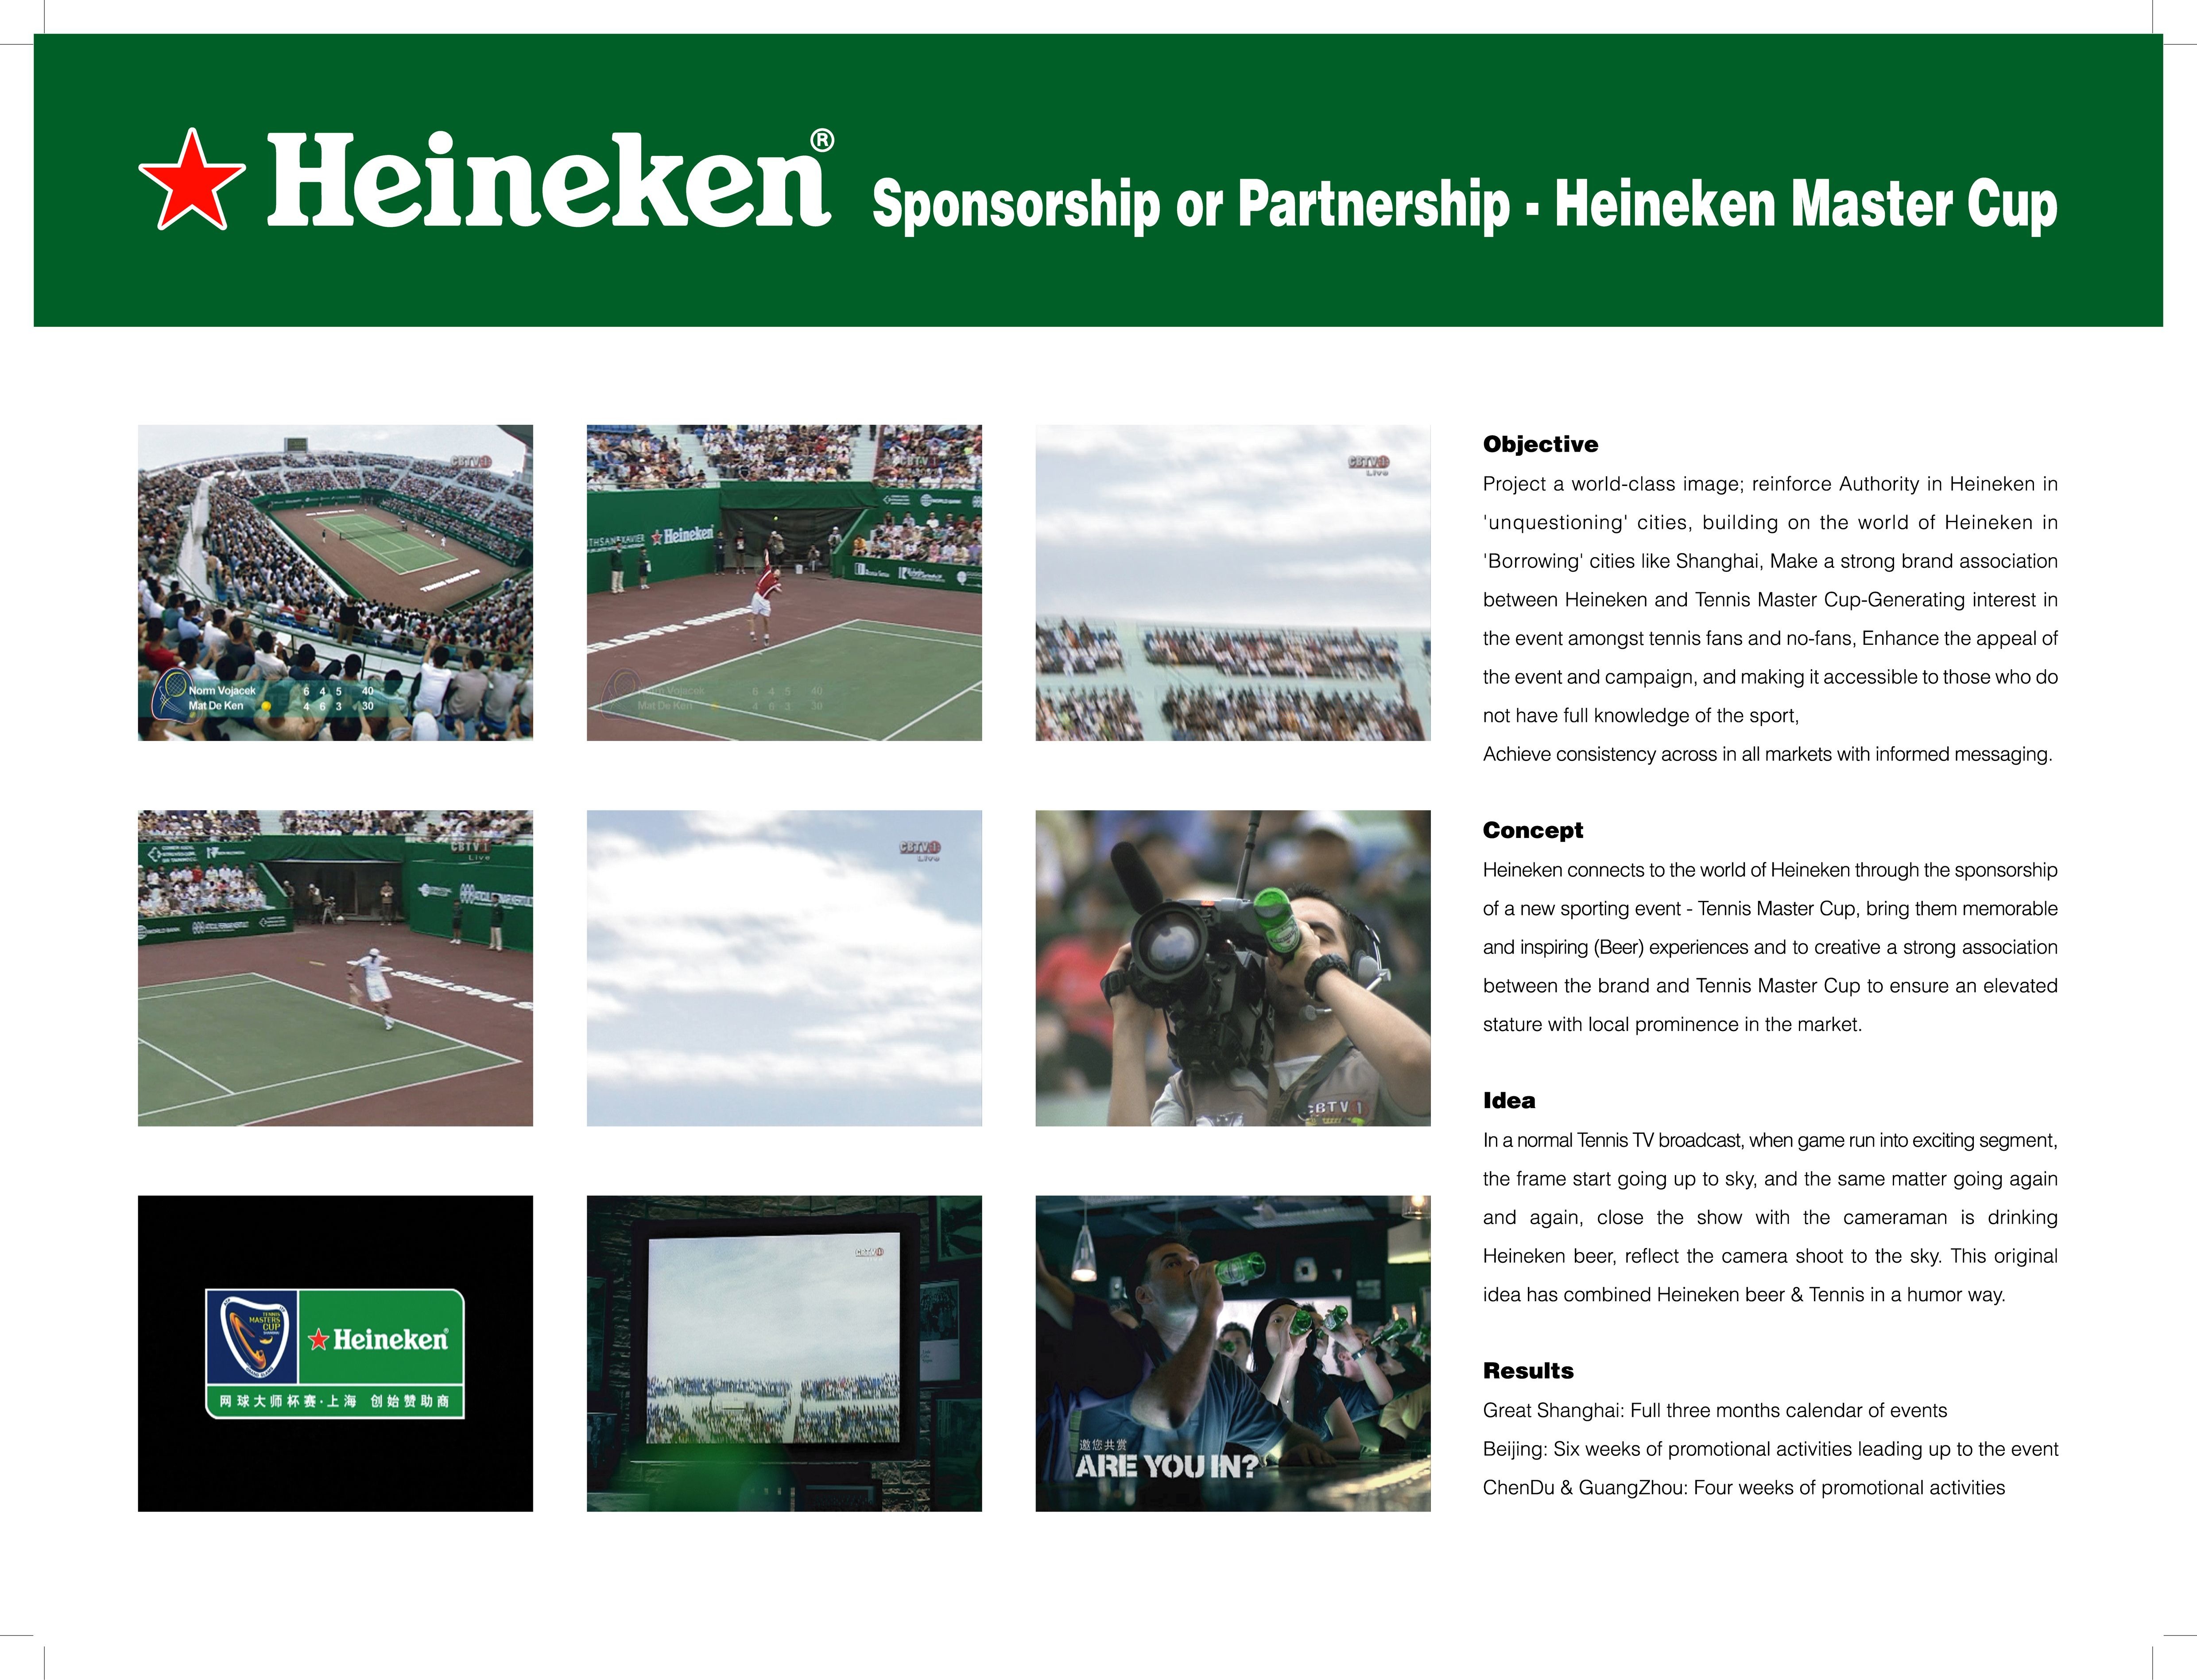 HEINEKEN/TENNIS MASTERS CUP